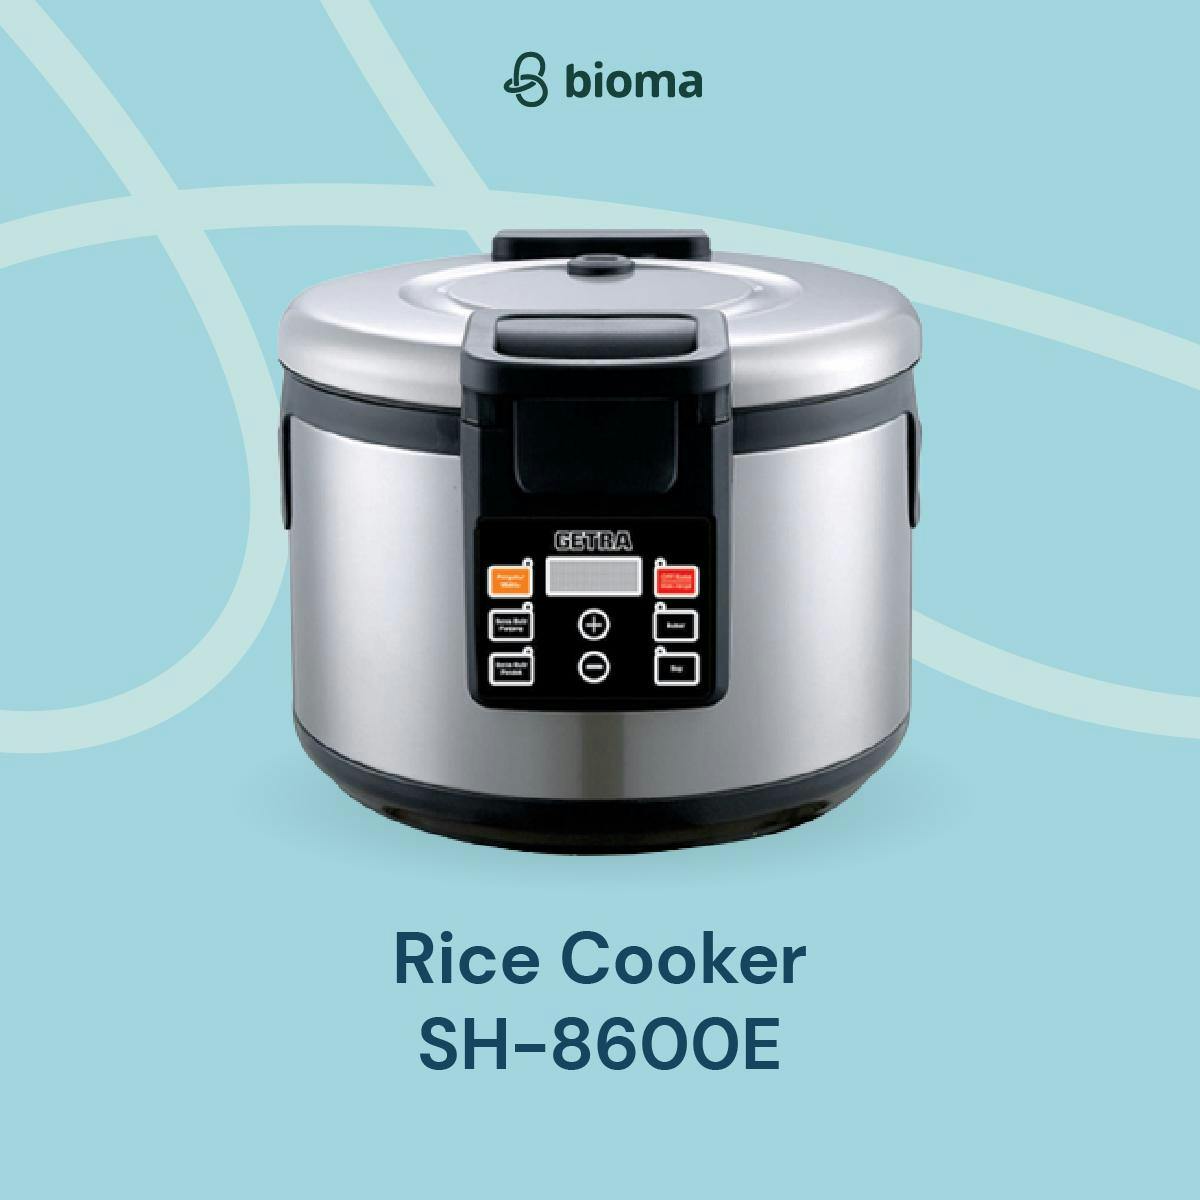 Rice Cooker SH-8600E